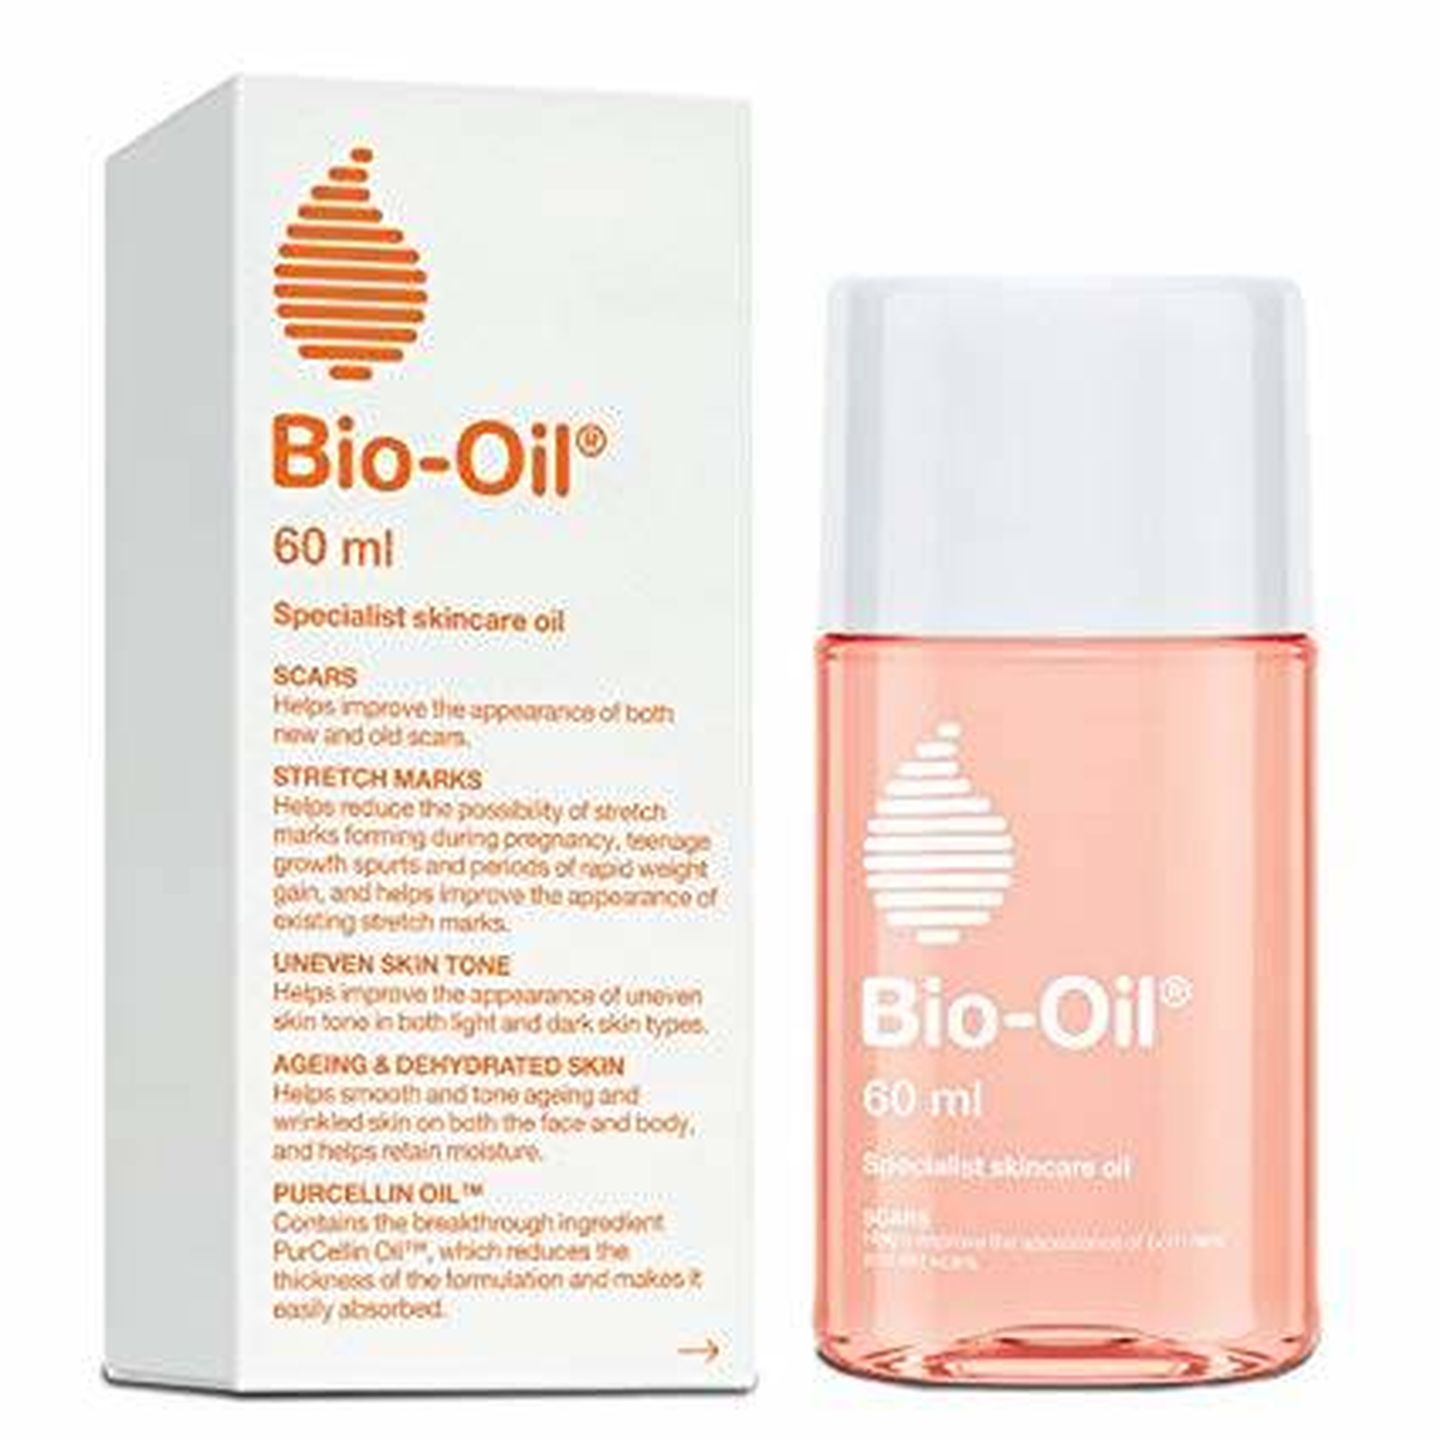 El aceite Bio-Oil que usa Meghan Markle. (Cortesía)